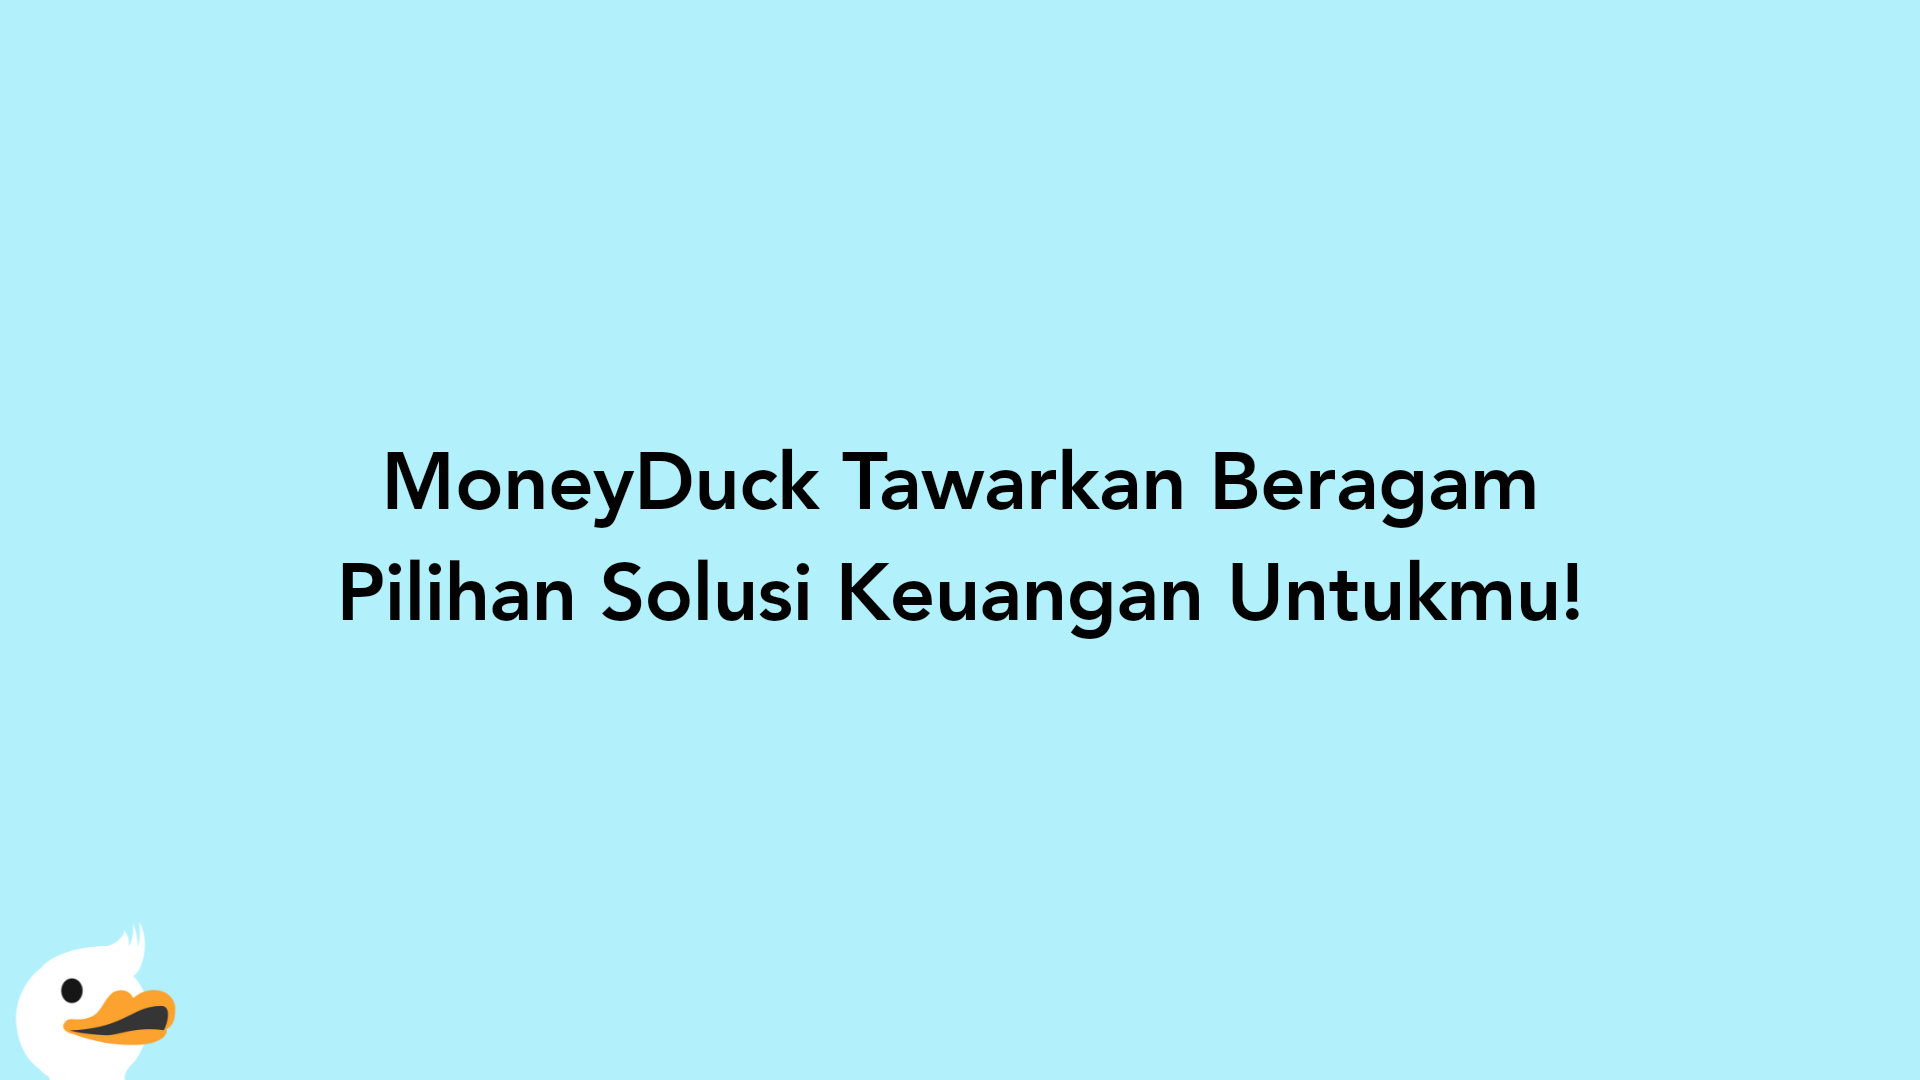 MoneyDuck Tawarkan Beragam Pilihan Solusi Keuangan Untukmu!